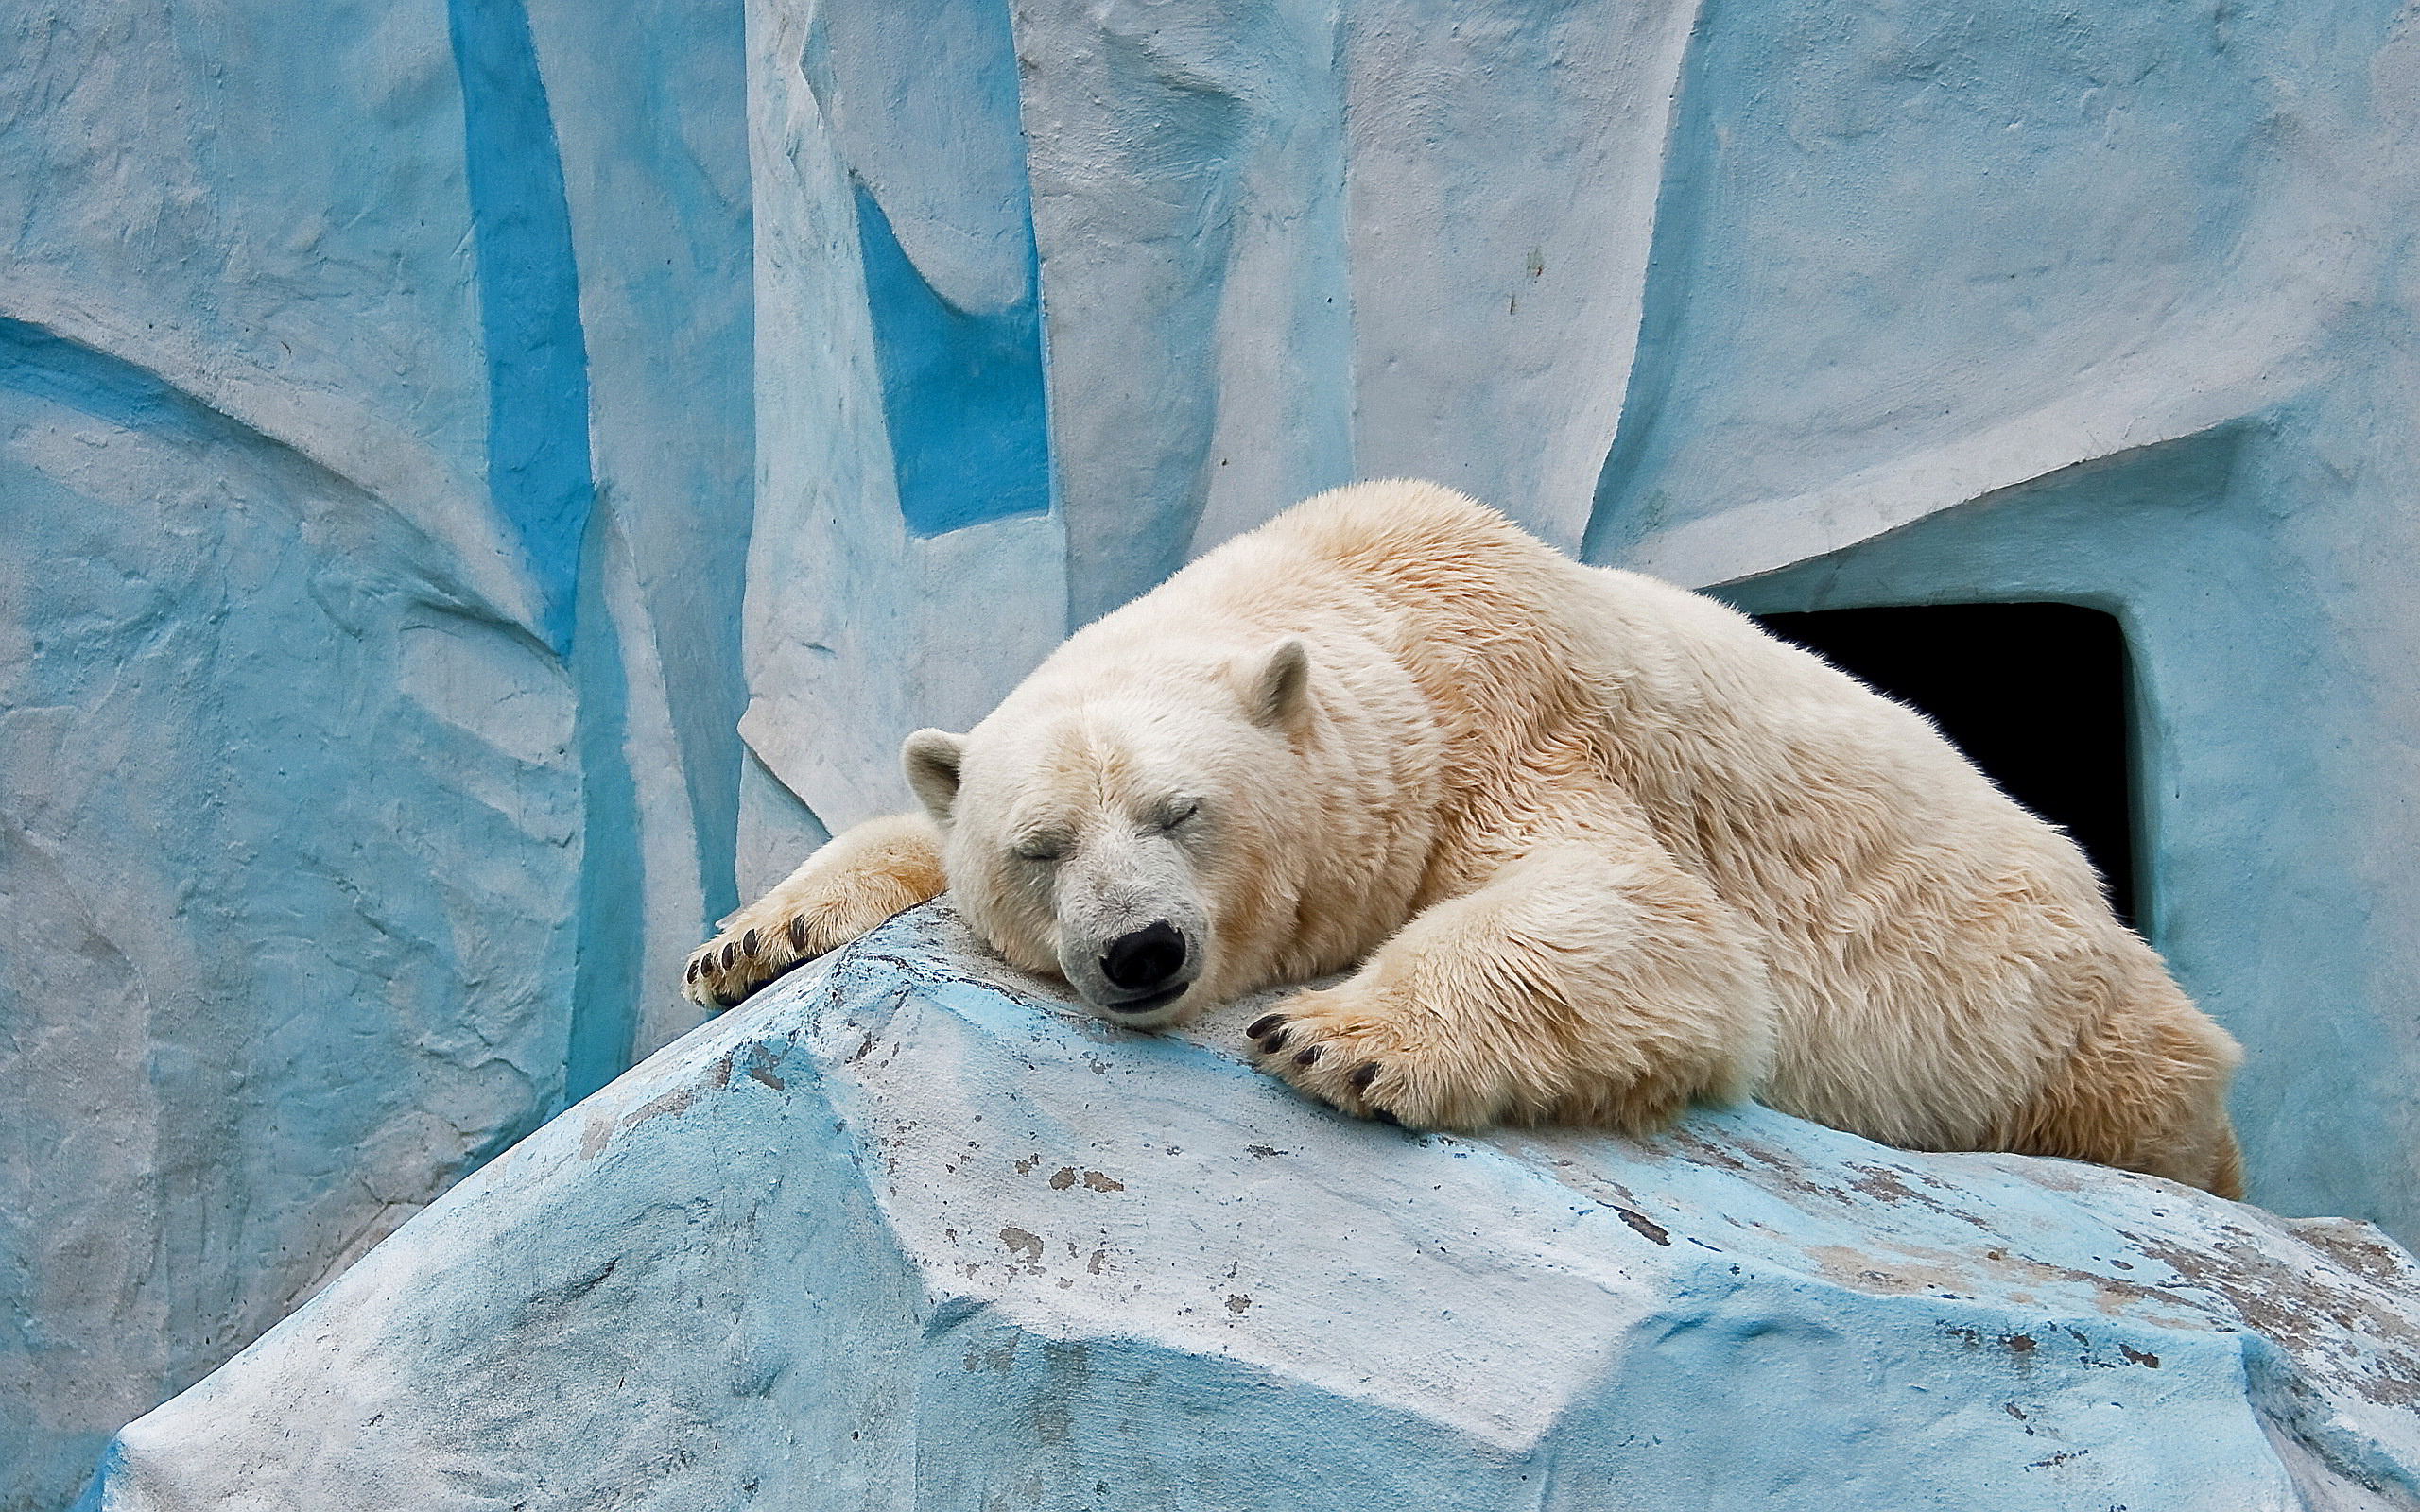 Ice bear sleeping